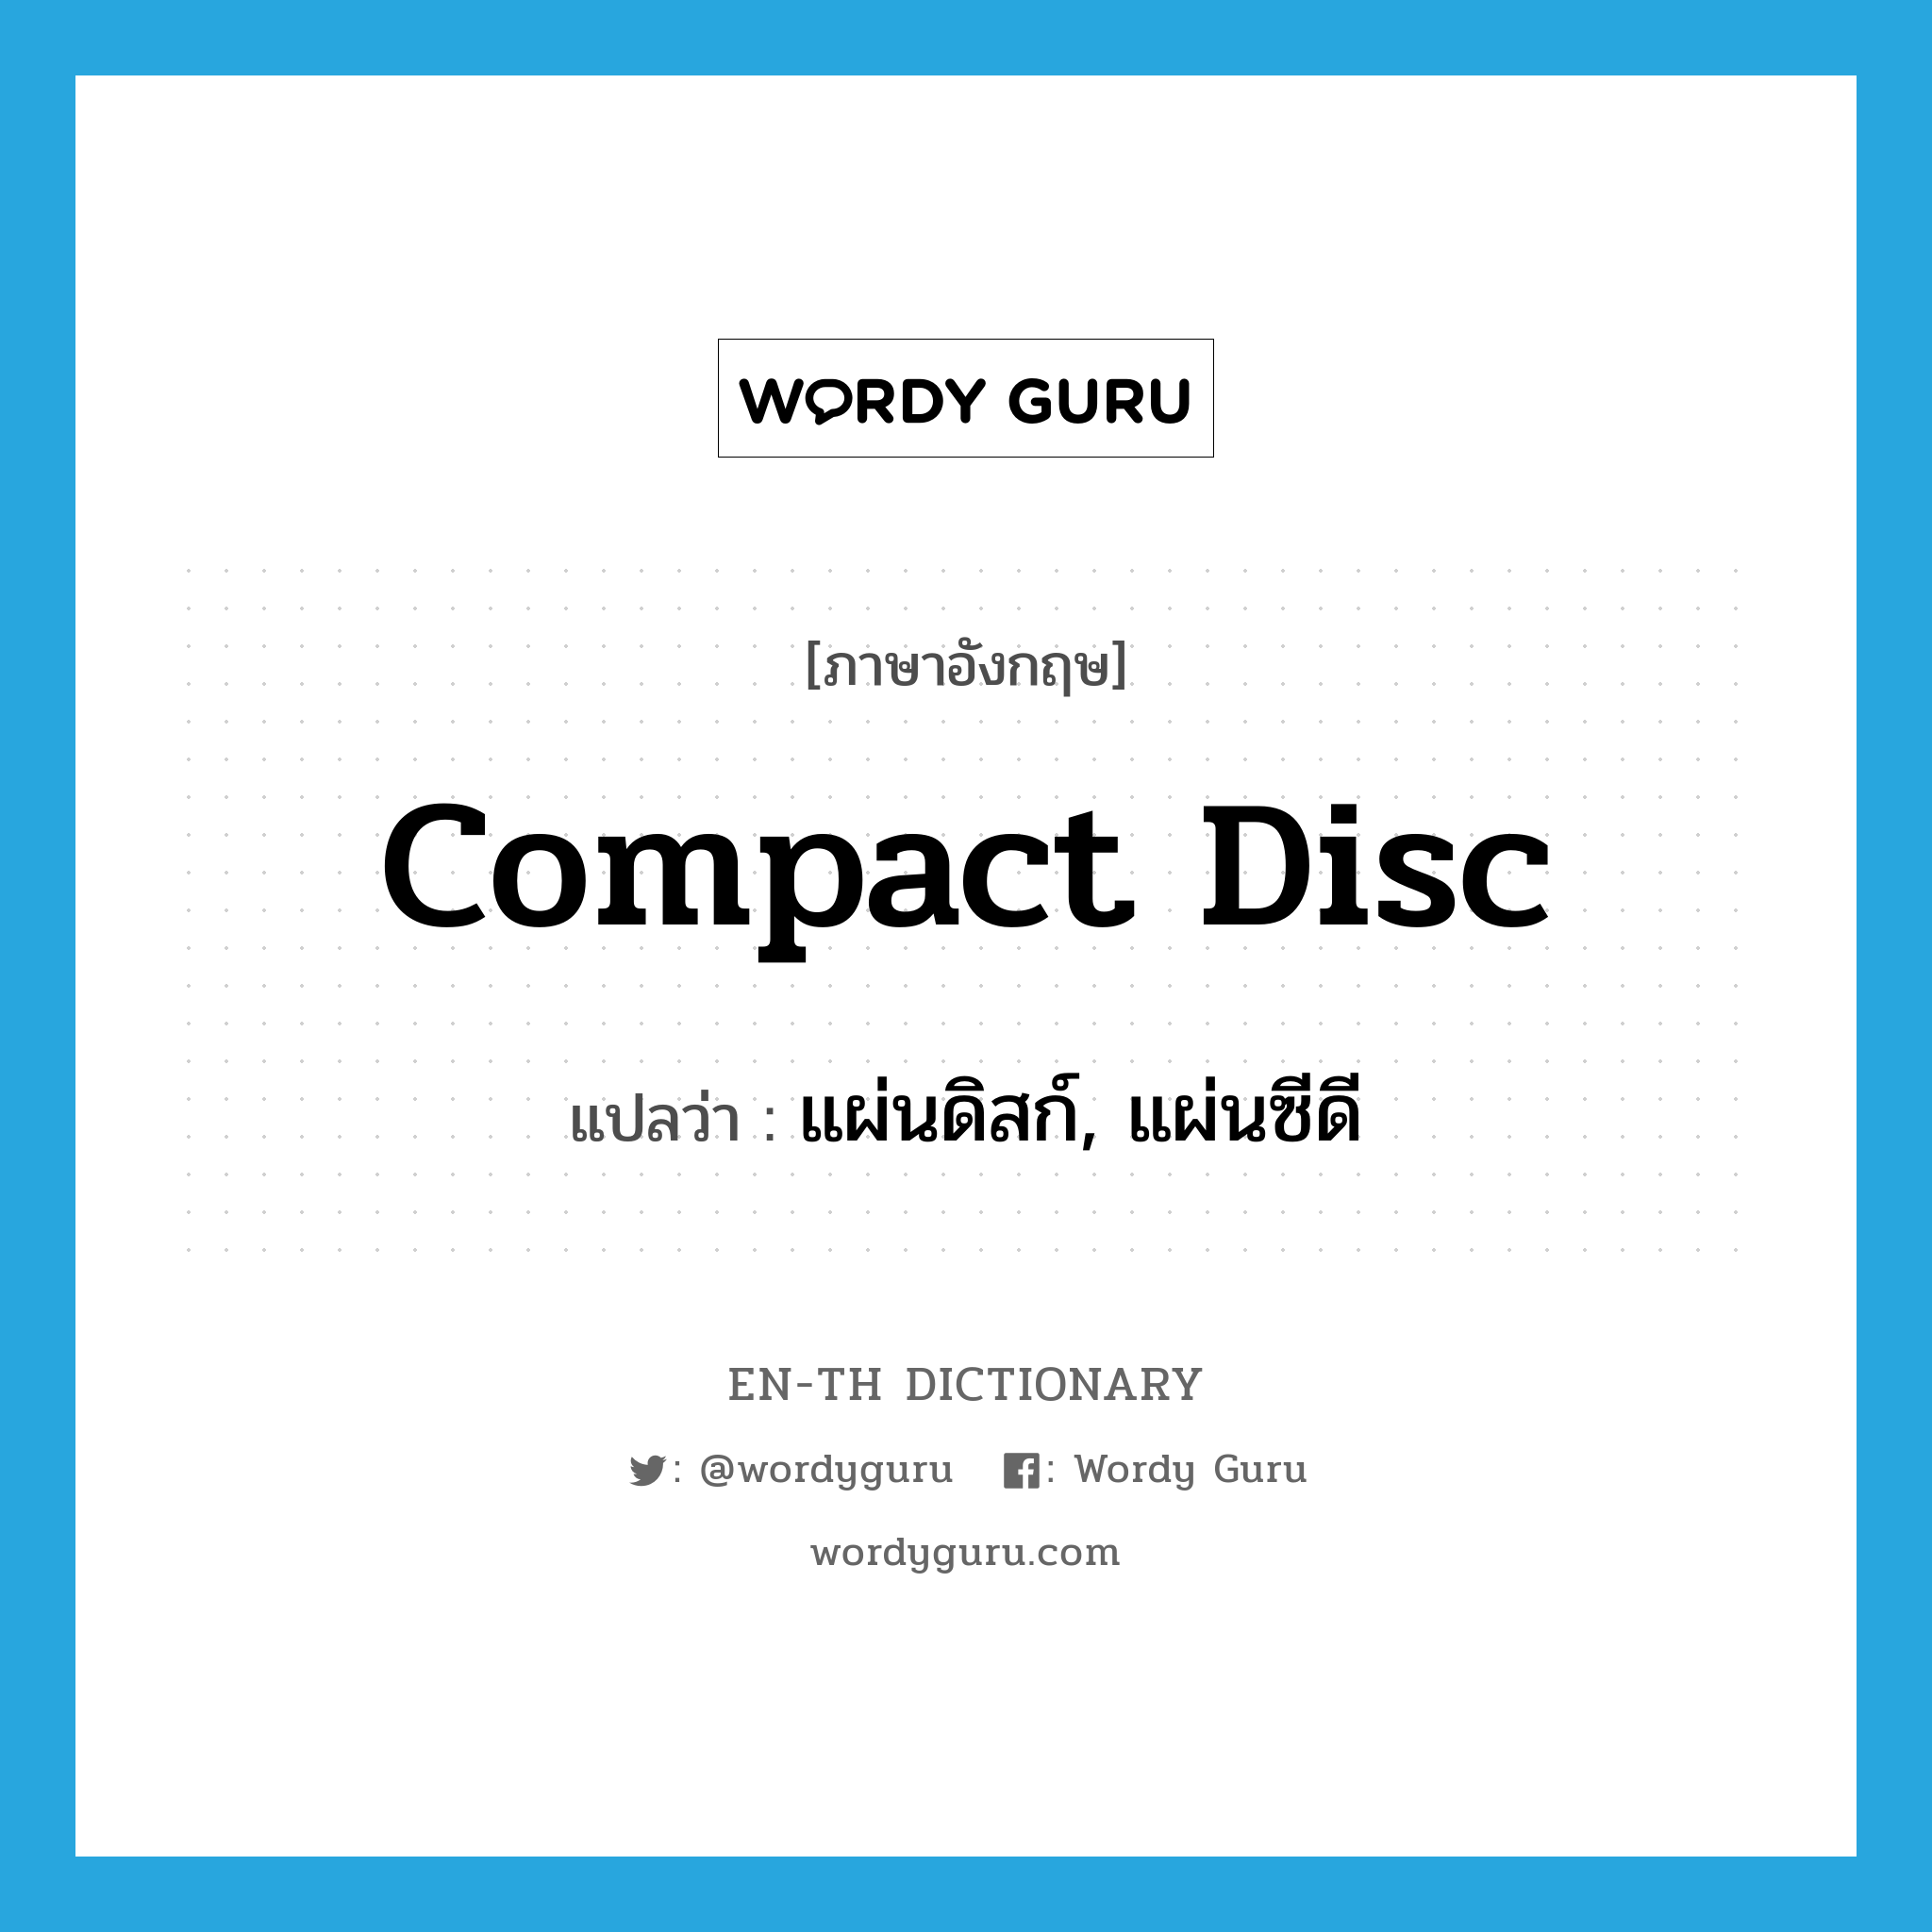 แผ่นดิสก์, แผ่นซีดี ภาษาอังกฤษ?, คำศัพท์ภาษาอังกฤษ แผ่นดิสก์, แผ่นซีดี แปลว่า compact disc ประเภท N หมวด N